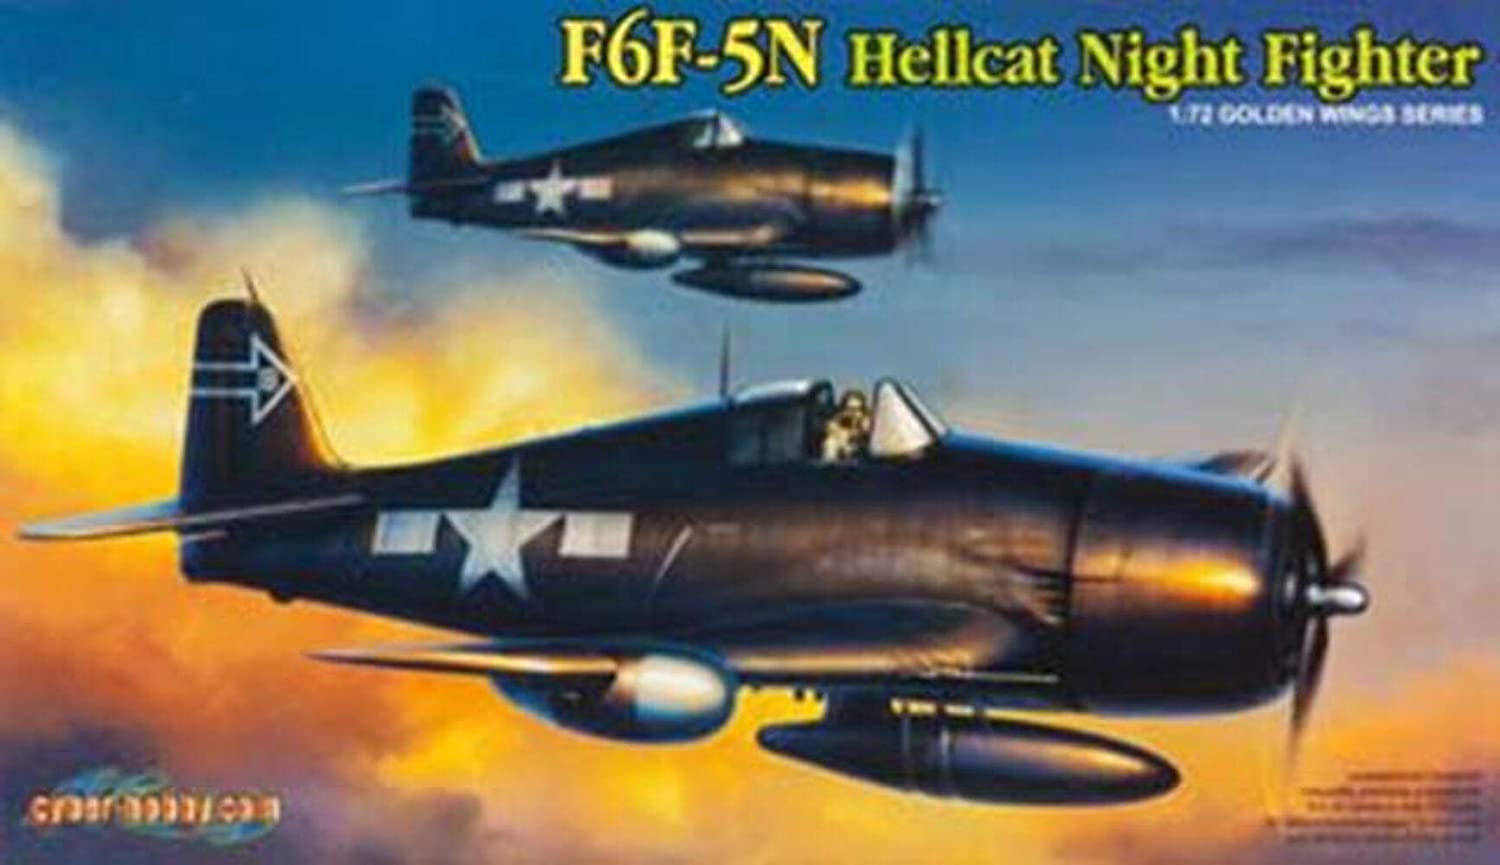 サイバーホビー 1/72 WW.II アメリカ海軍 F6F-5N ヘルキャット 夜間戦闘機 プラモデル